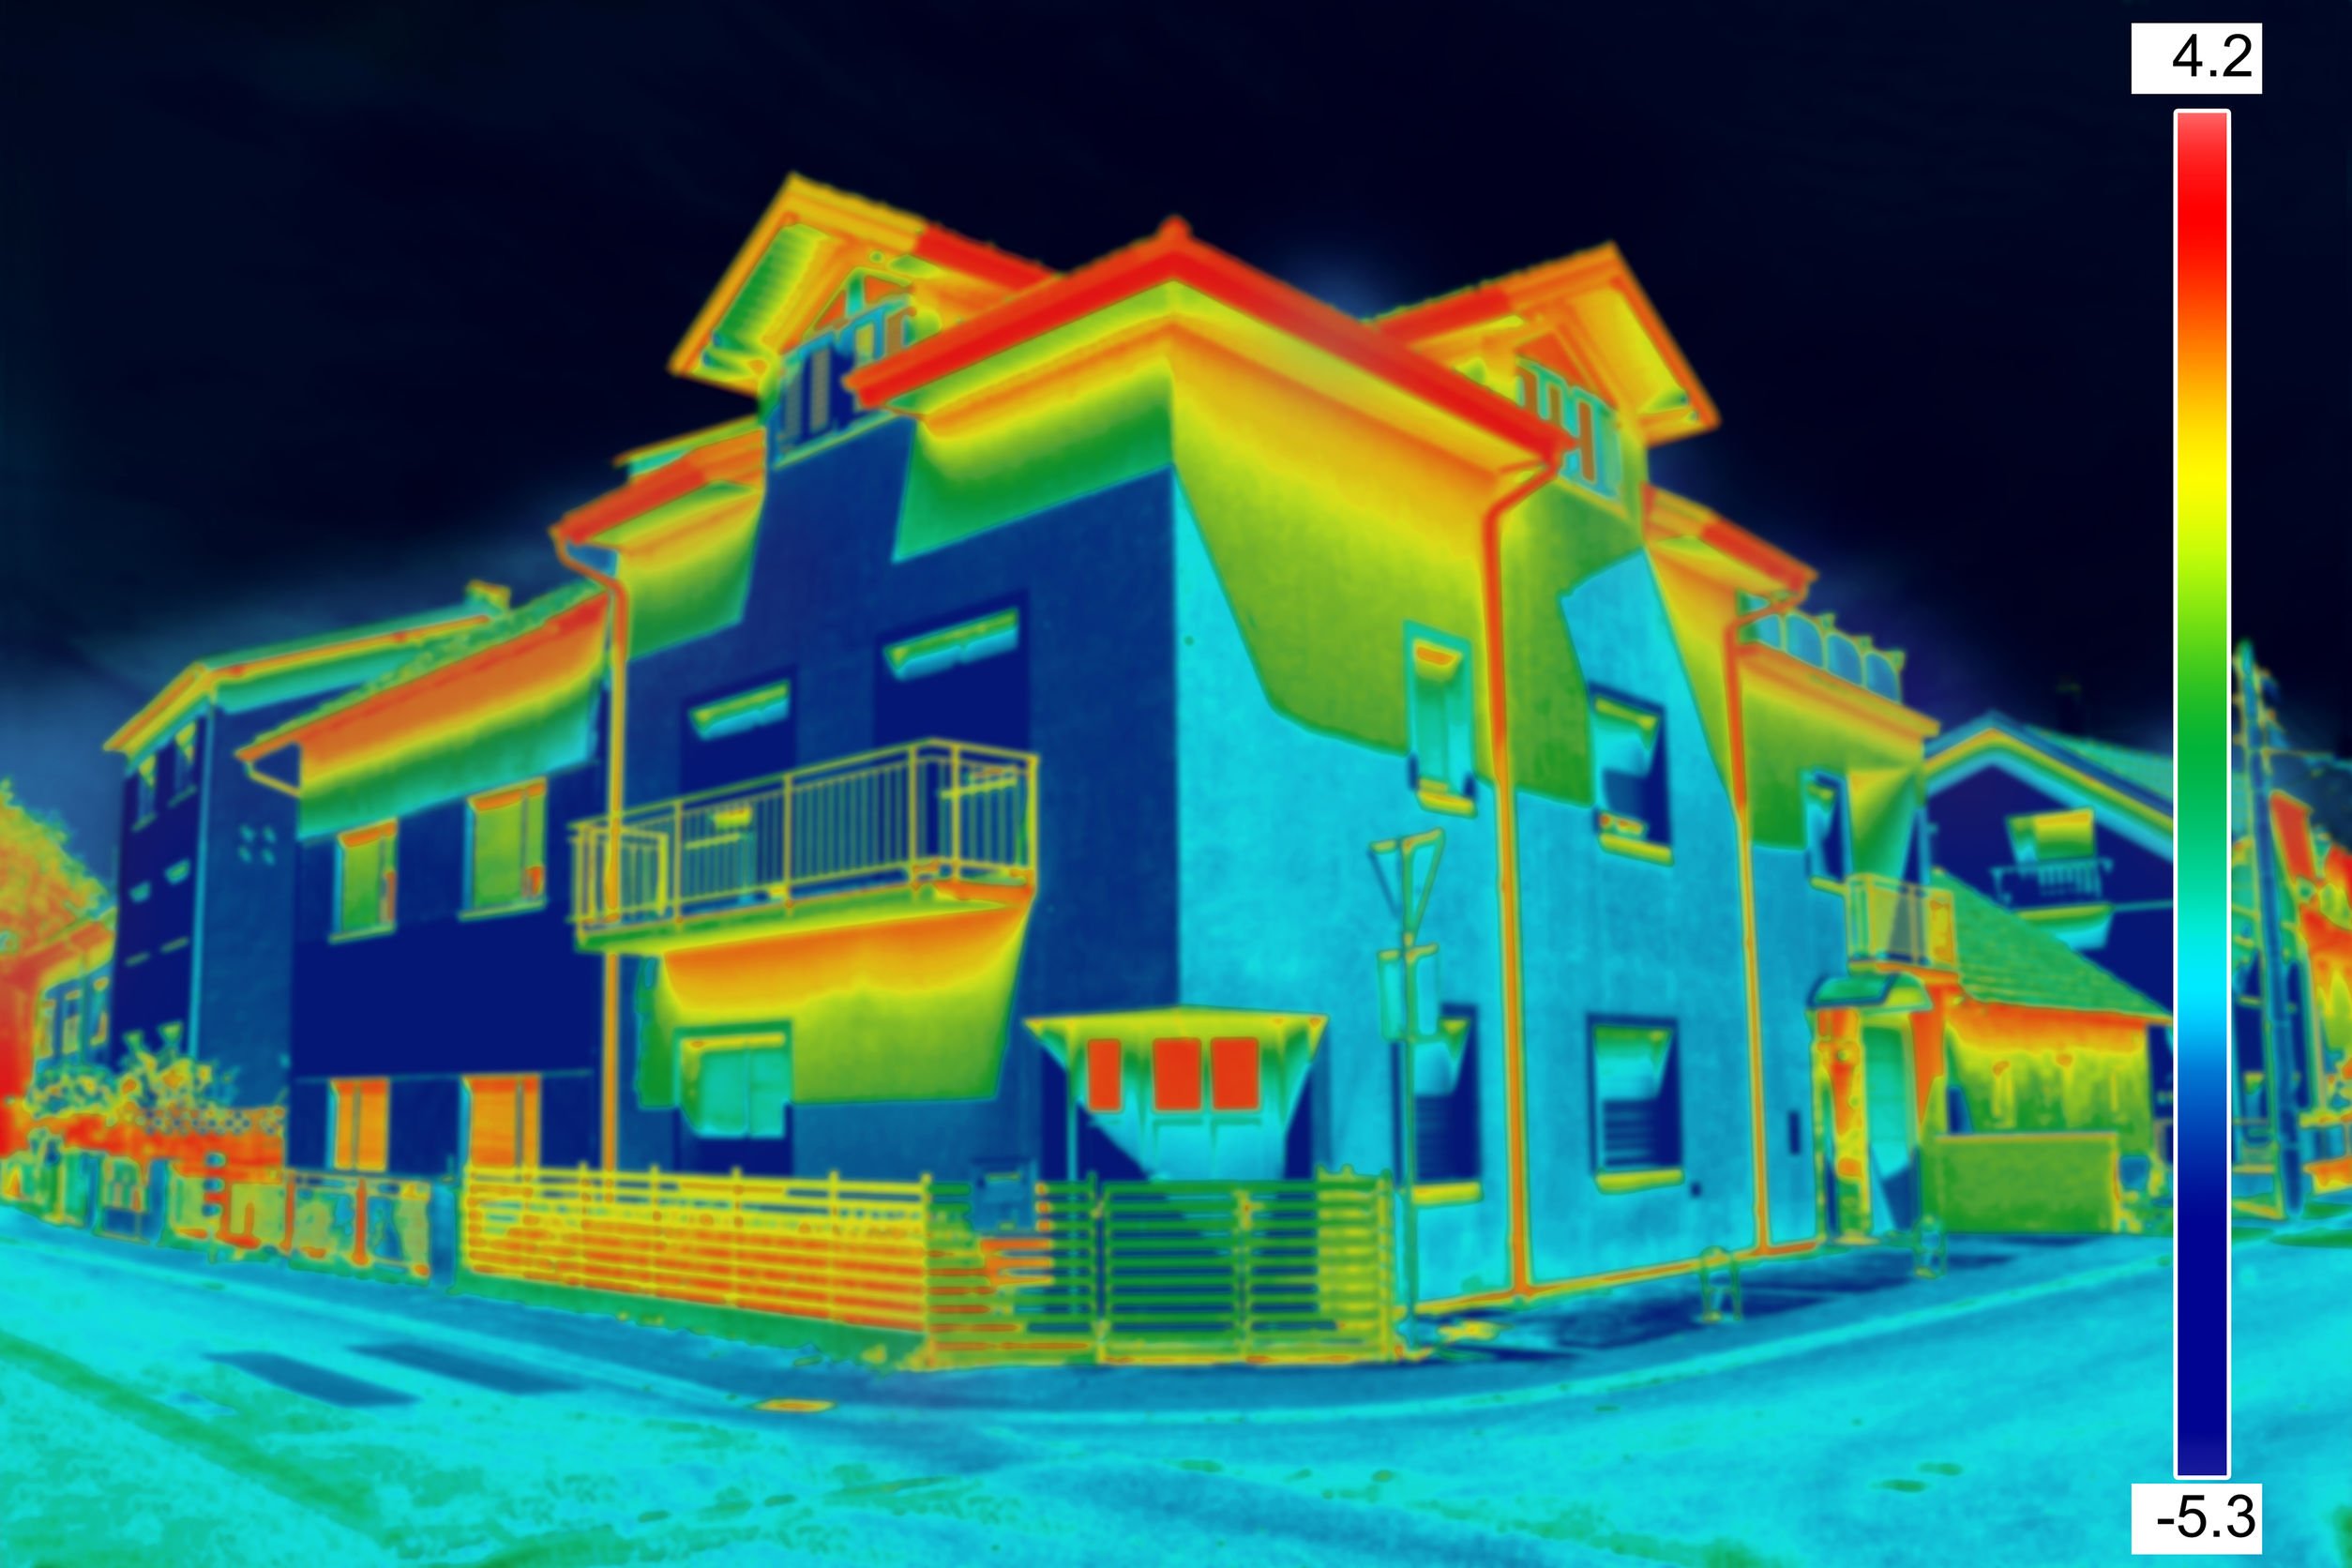 Image infrarouge des flux thermiques d'une maison pour repérer les déperditions thermiques